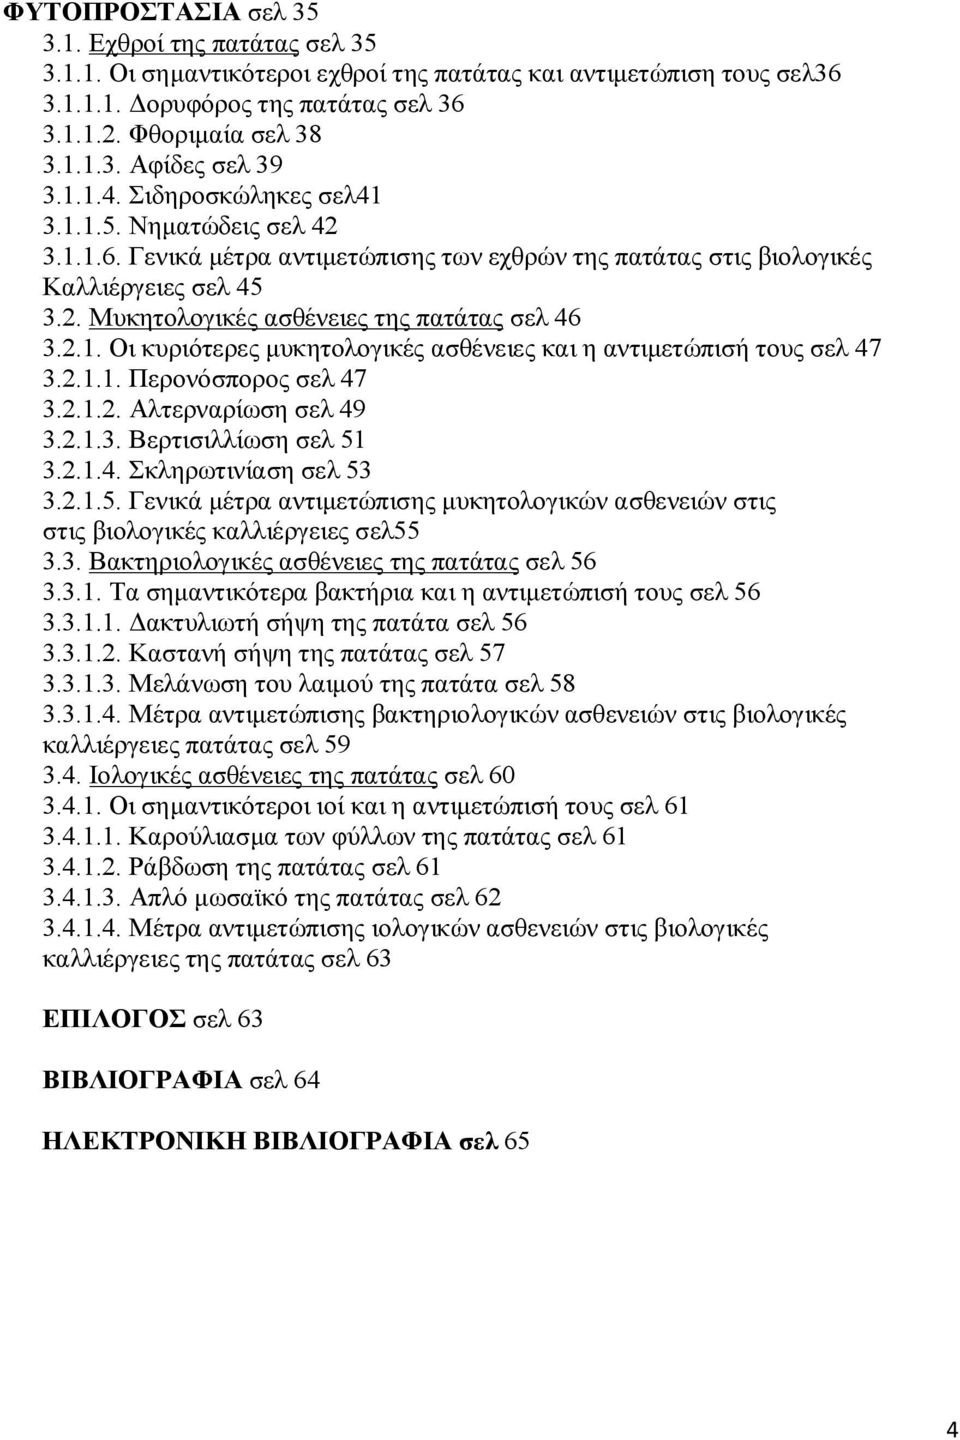 2.1. Οι κυριότερες μυκητολογικές ασθένειες και η αντιμετώπισή τους σελ 47 3.2.1.1. Περονόσπορος σελ 47 3.2.1.2. Αλτερναρίωση σελ 49 3.2.1.3. Βερτισιλλίωση σελ 51